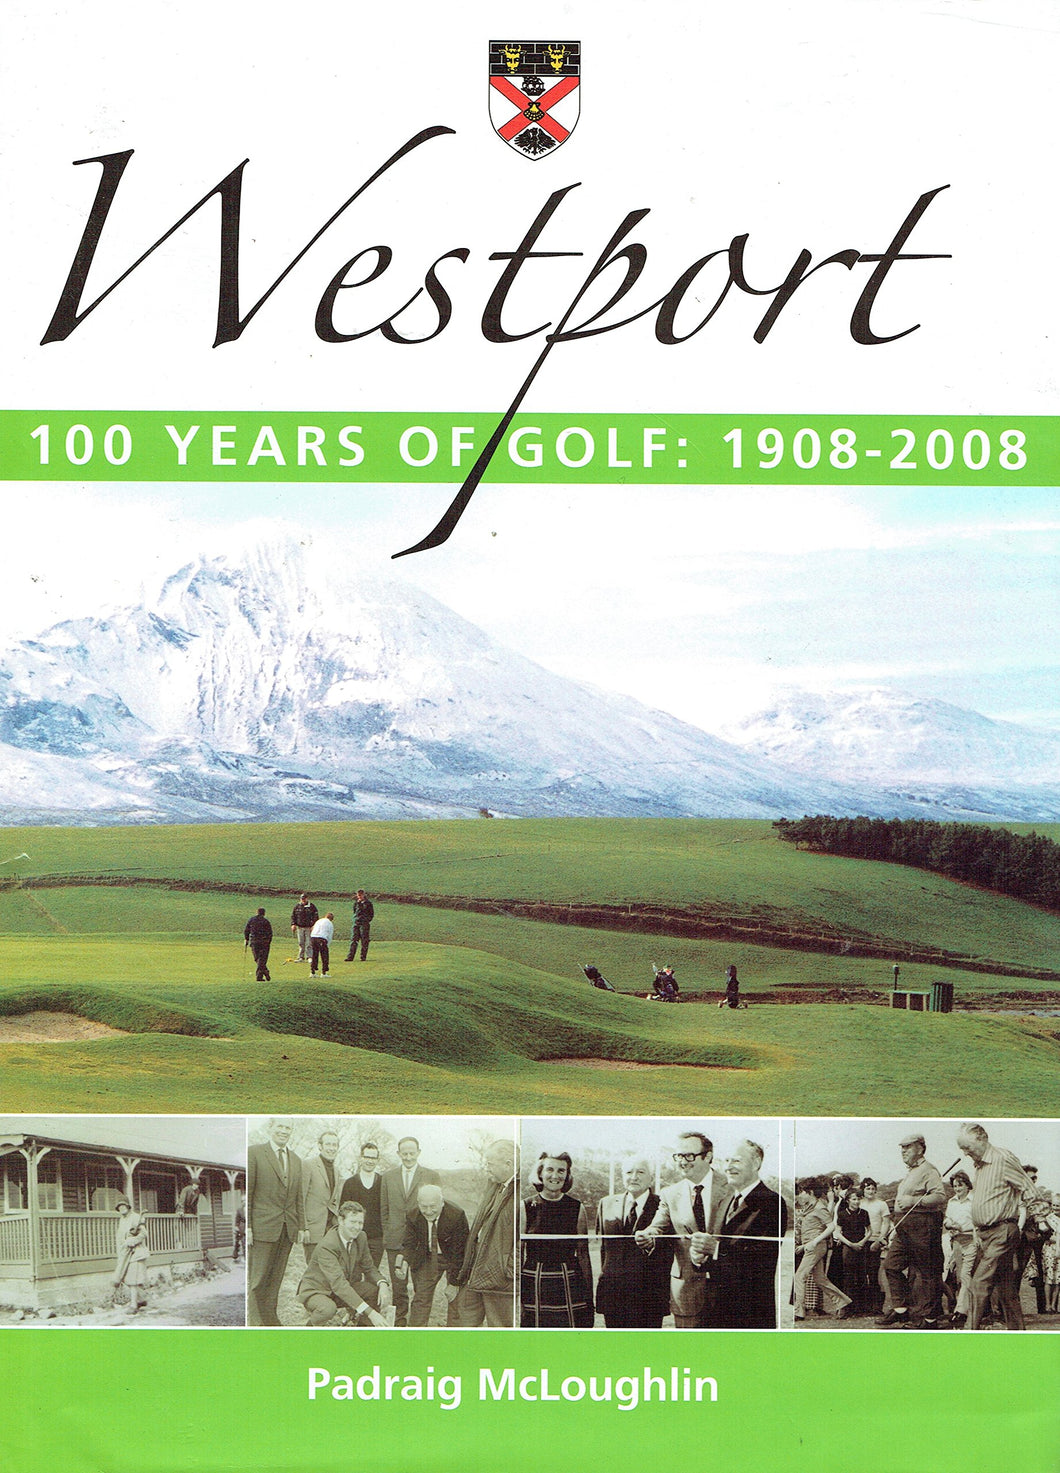 Westport, 100 Years of Golf: 1908-2008